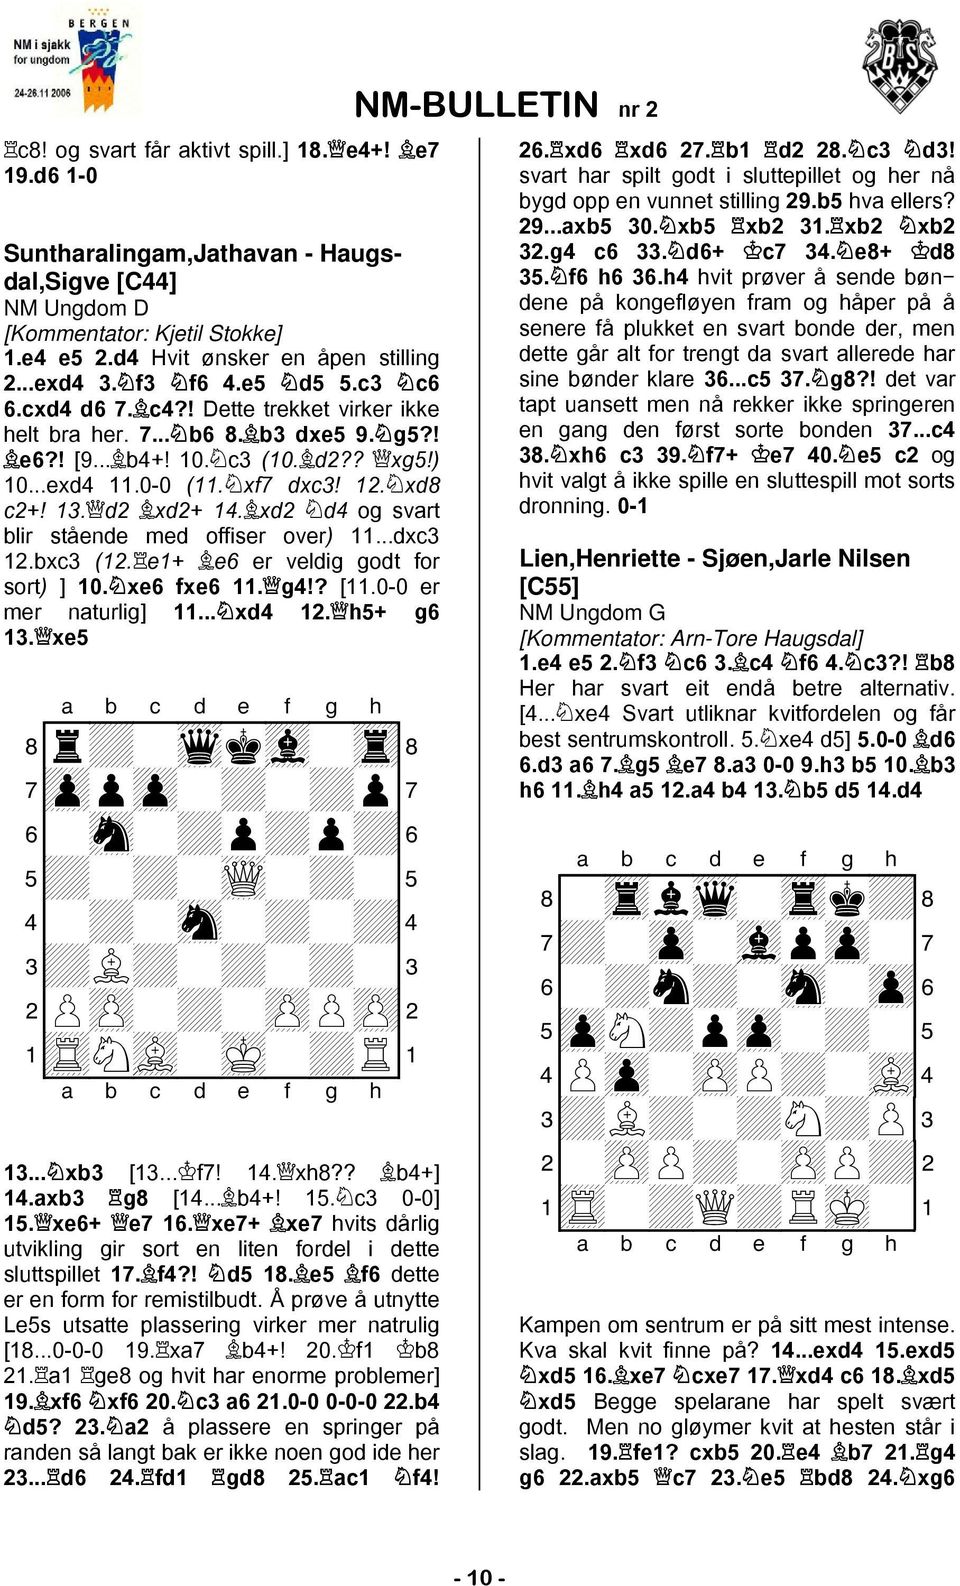 d2 xd2+ 14. xd2 d4 og svart blir stående med offiser over) 11...dxc3 12.bxc3 (12. e1+ e6 er veldig godt for sort) ] 10. xe6 fxe6 11. g4!? [11.0-0 er mer naturlig] 11... xd4 12. h5+ g6 13.